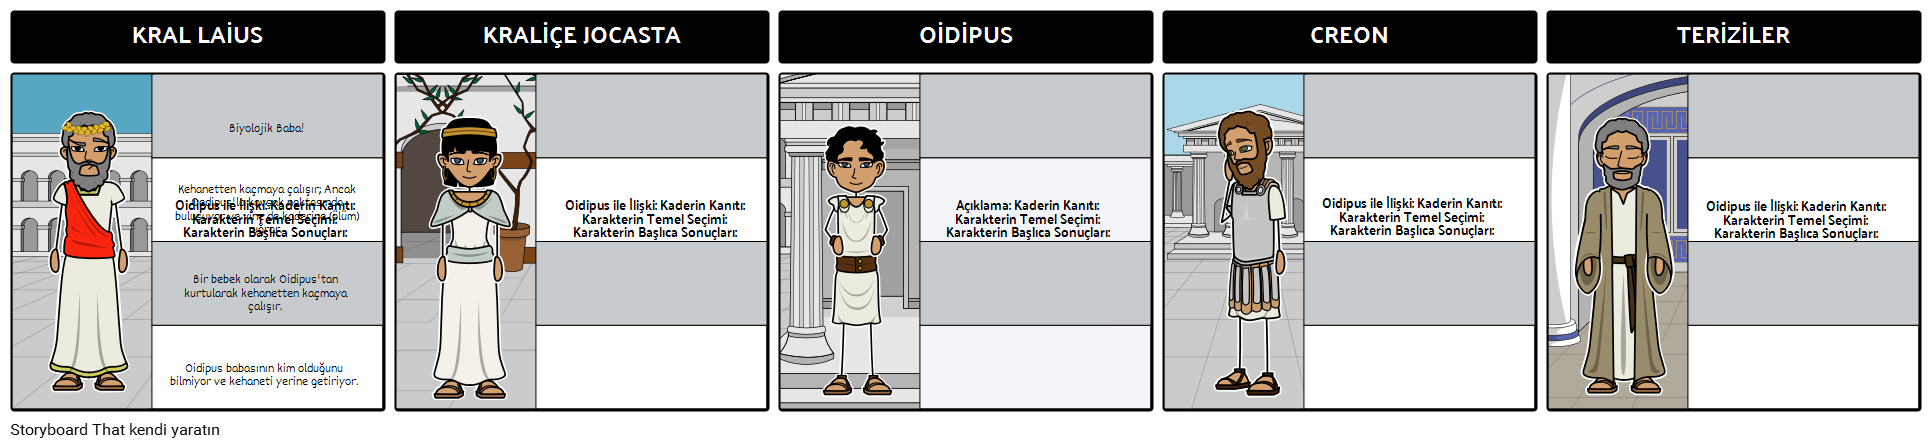 Oedipus - Karakalem